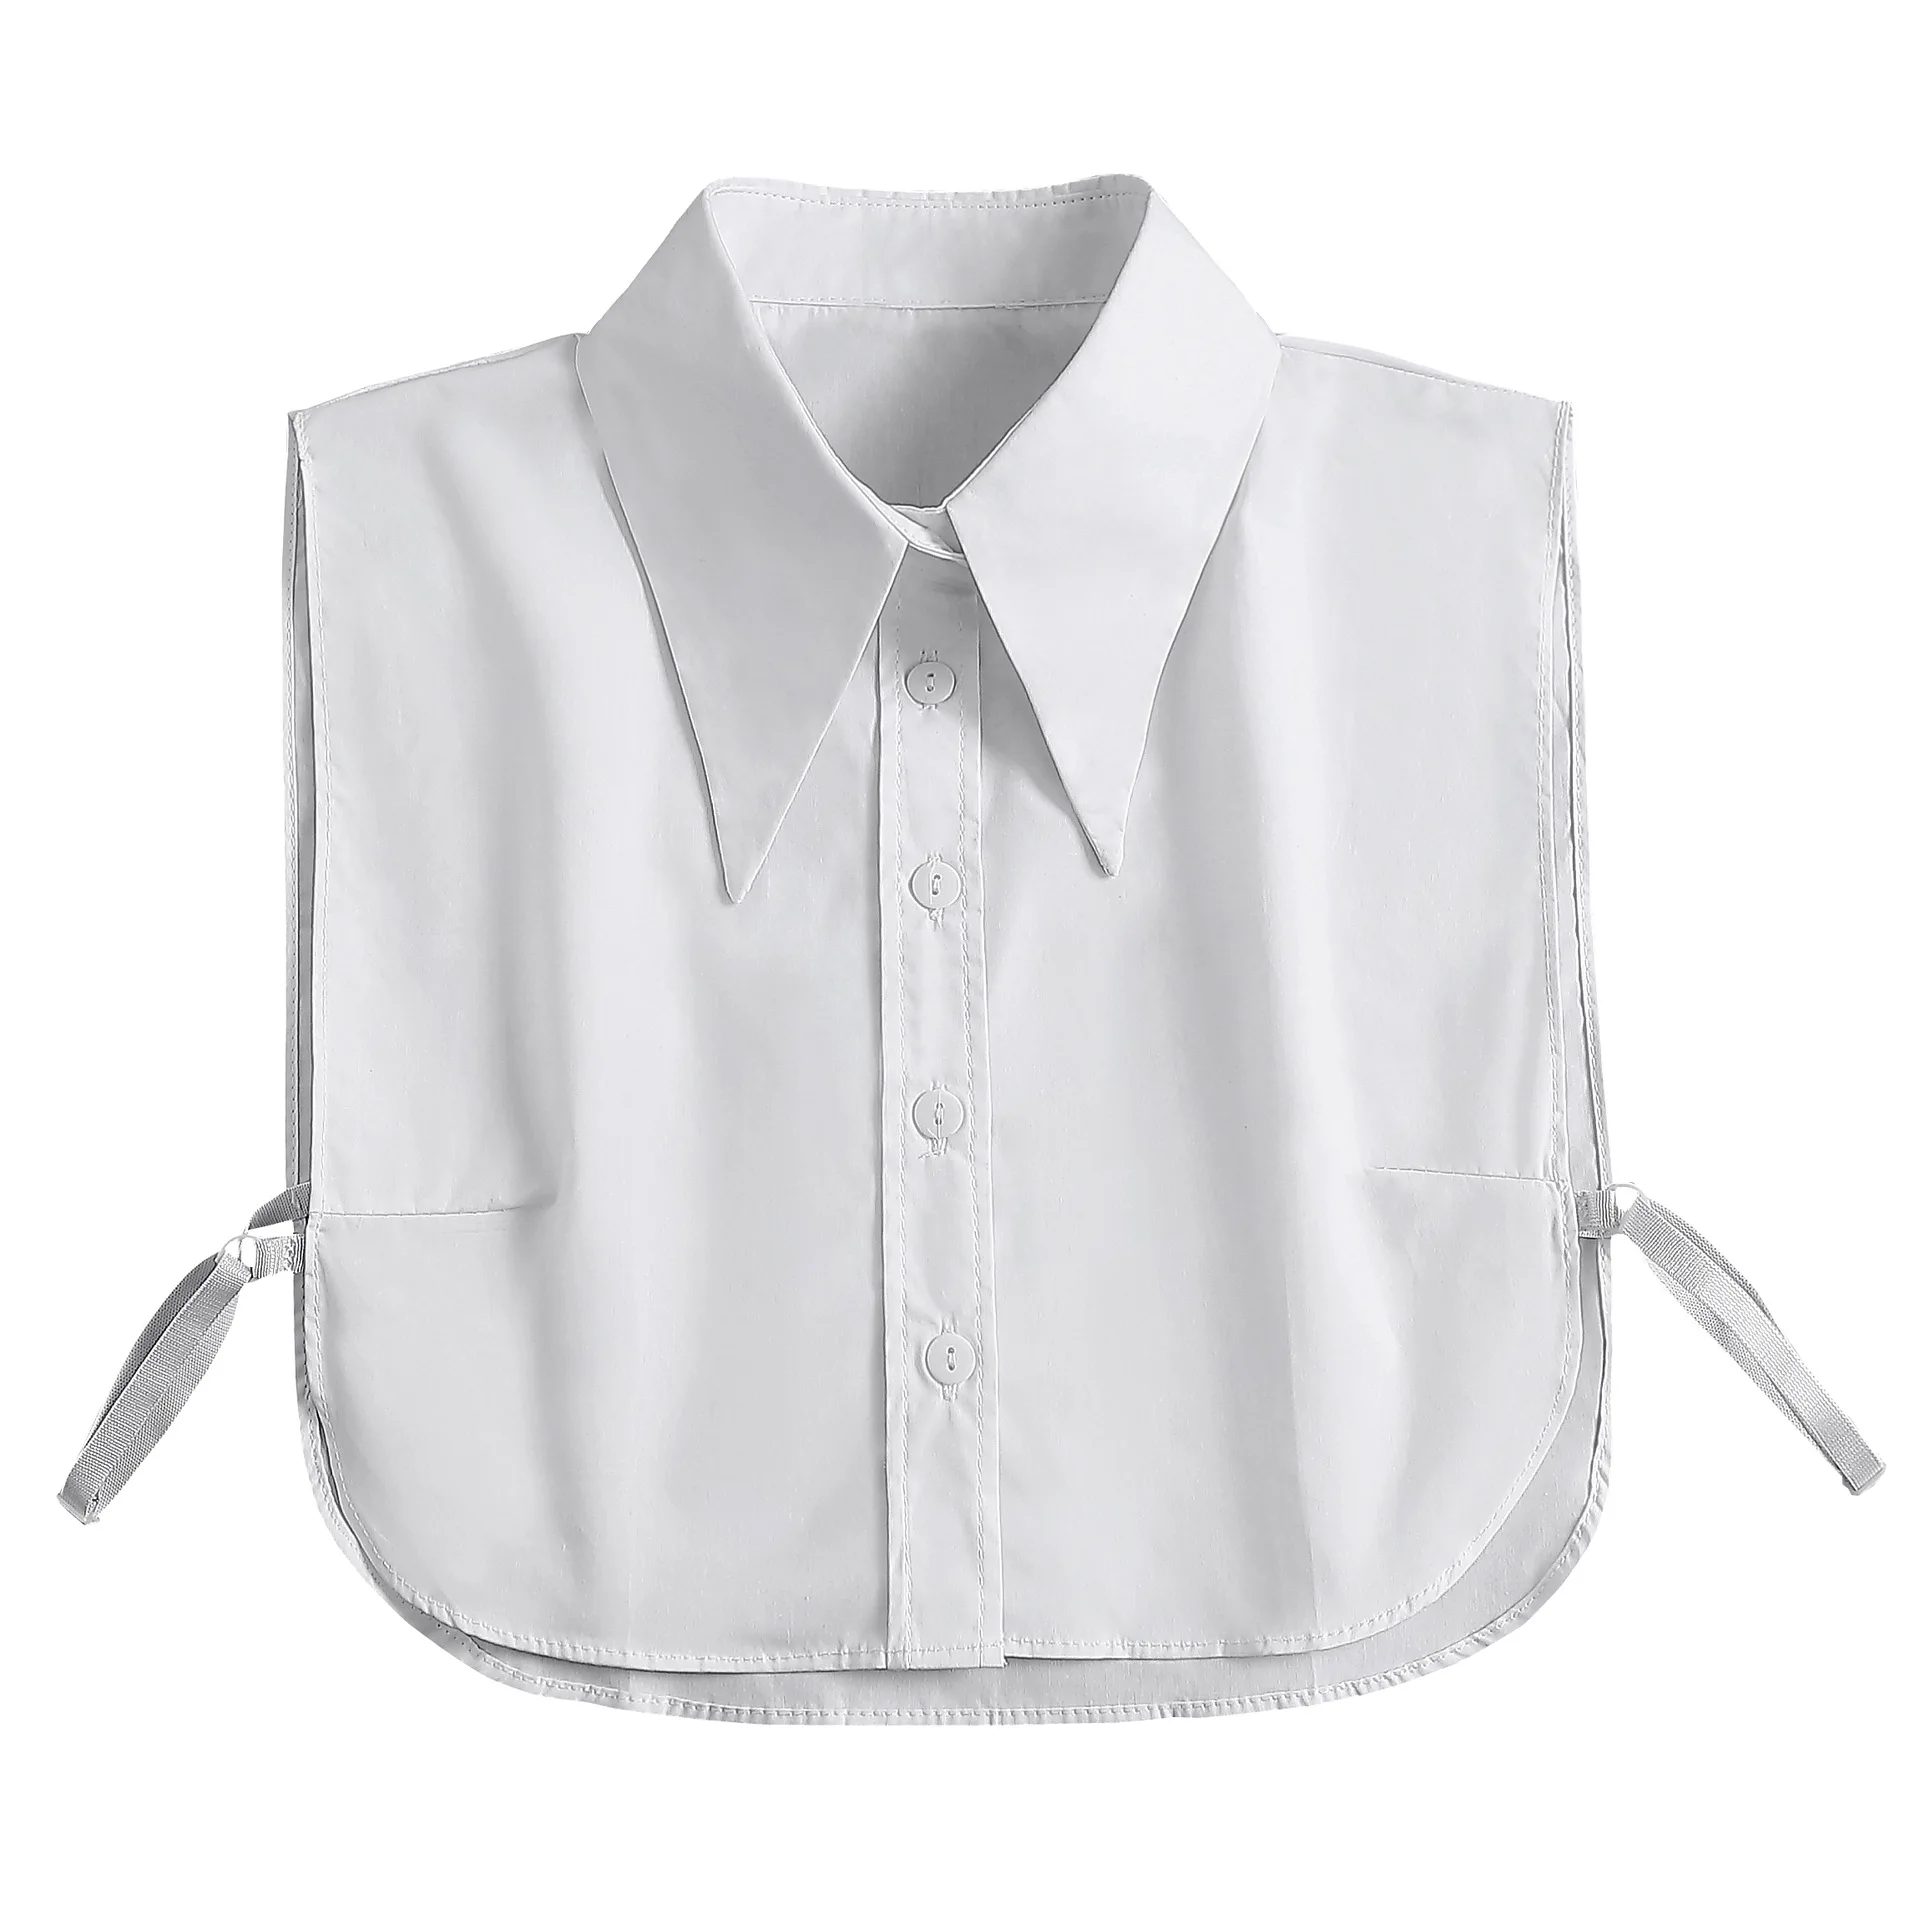 Накладная хлопок. Рубашка стильная белая воротник стойка для мальчика 164-170. Detachable Collar. Collar Blouse Peter Pen.